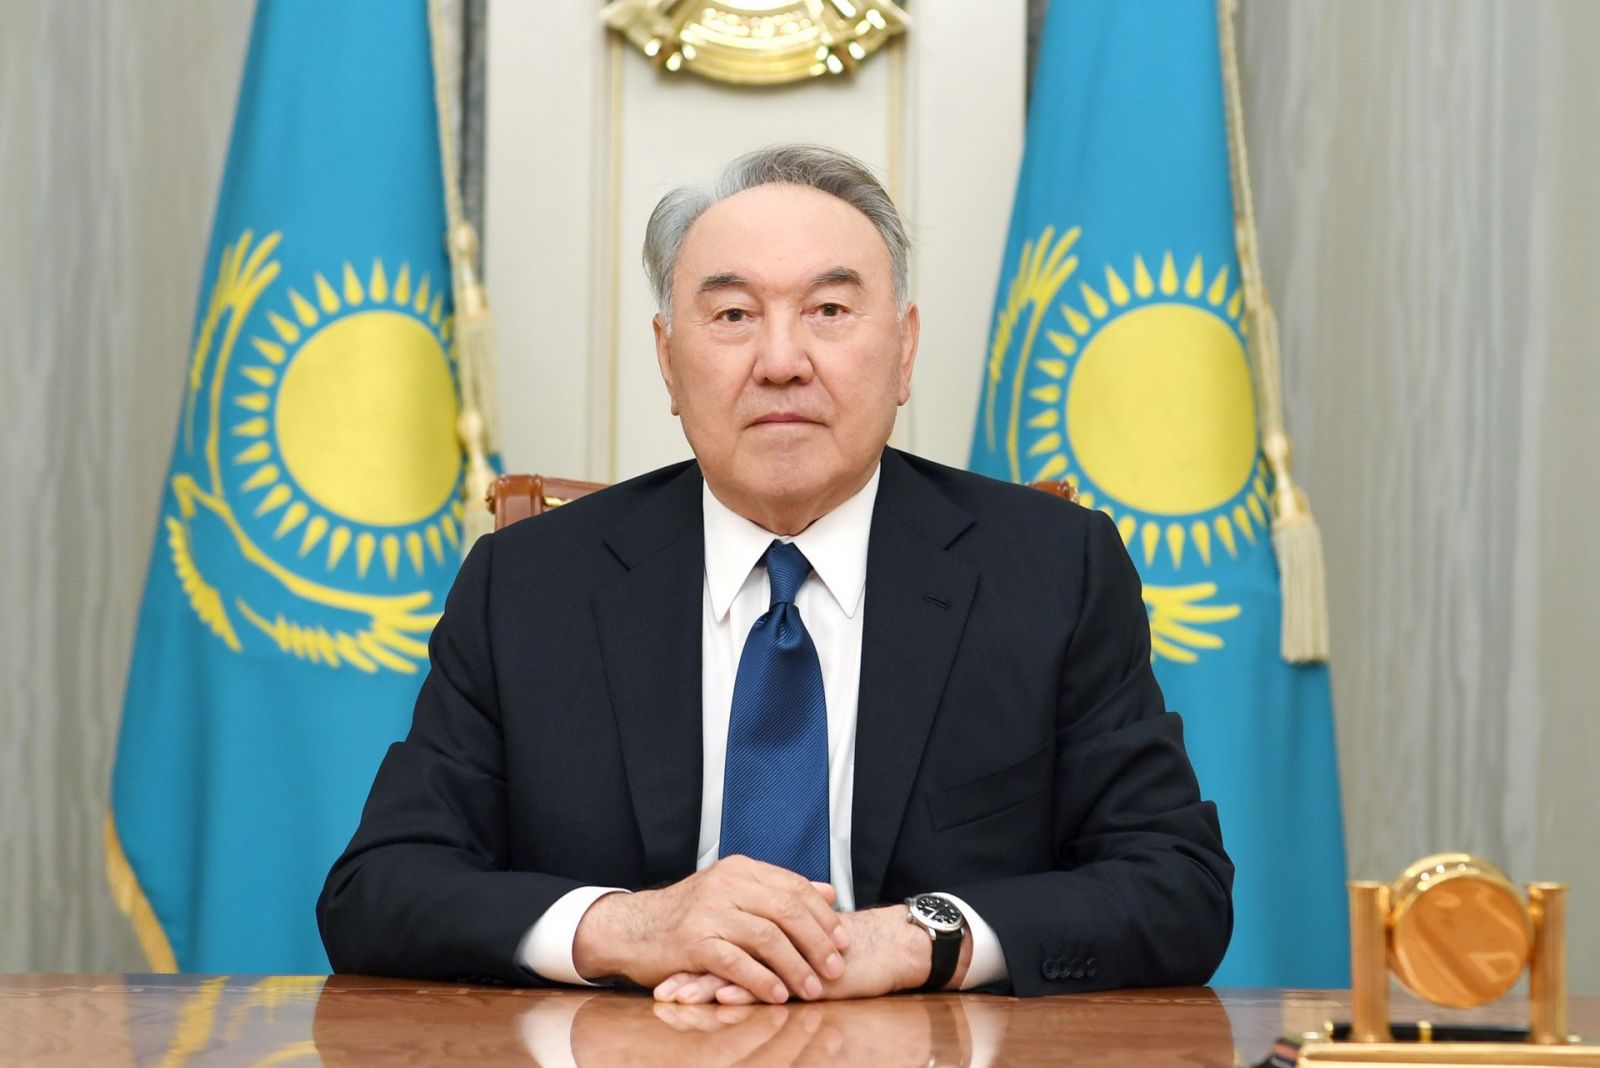 Nursultan Nazarbayev: “Qəddafi mənə 20 milyard dollar təklif etmişdi, razılaşmadım...”